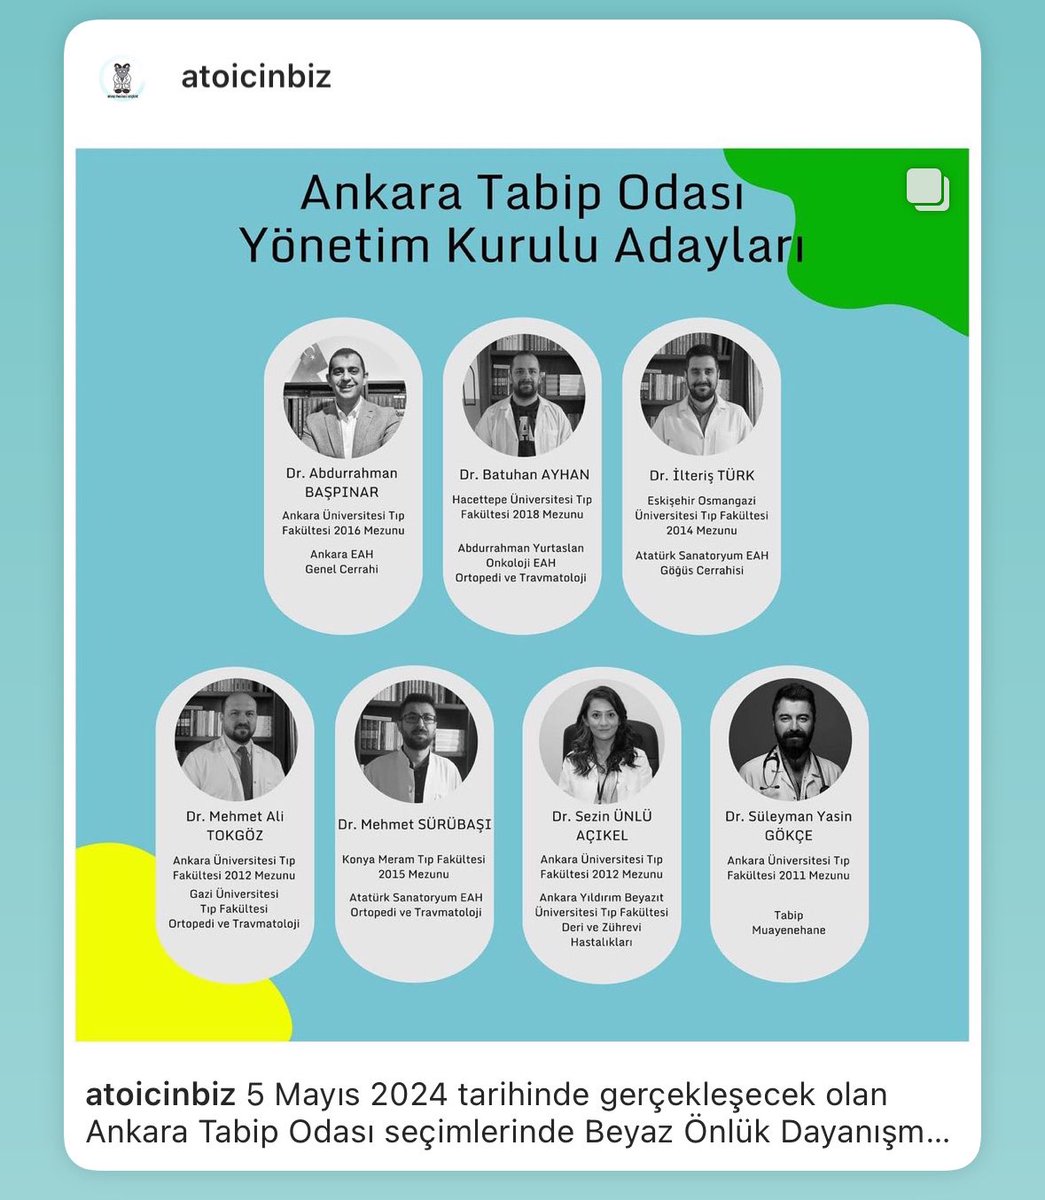 Ankara'da bulunan, tabip odasına üye olan tüm hekim arkadaşlarımı @atoicinbiz adaylarını desteklemeye davet ediyorum. 🥼Oy ver, değişime omuz ver 🇹🇷